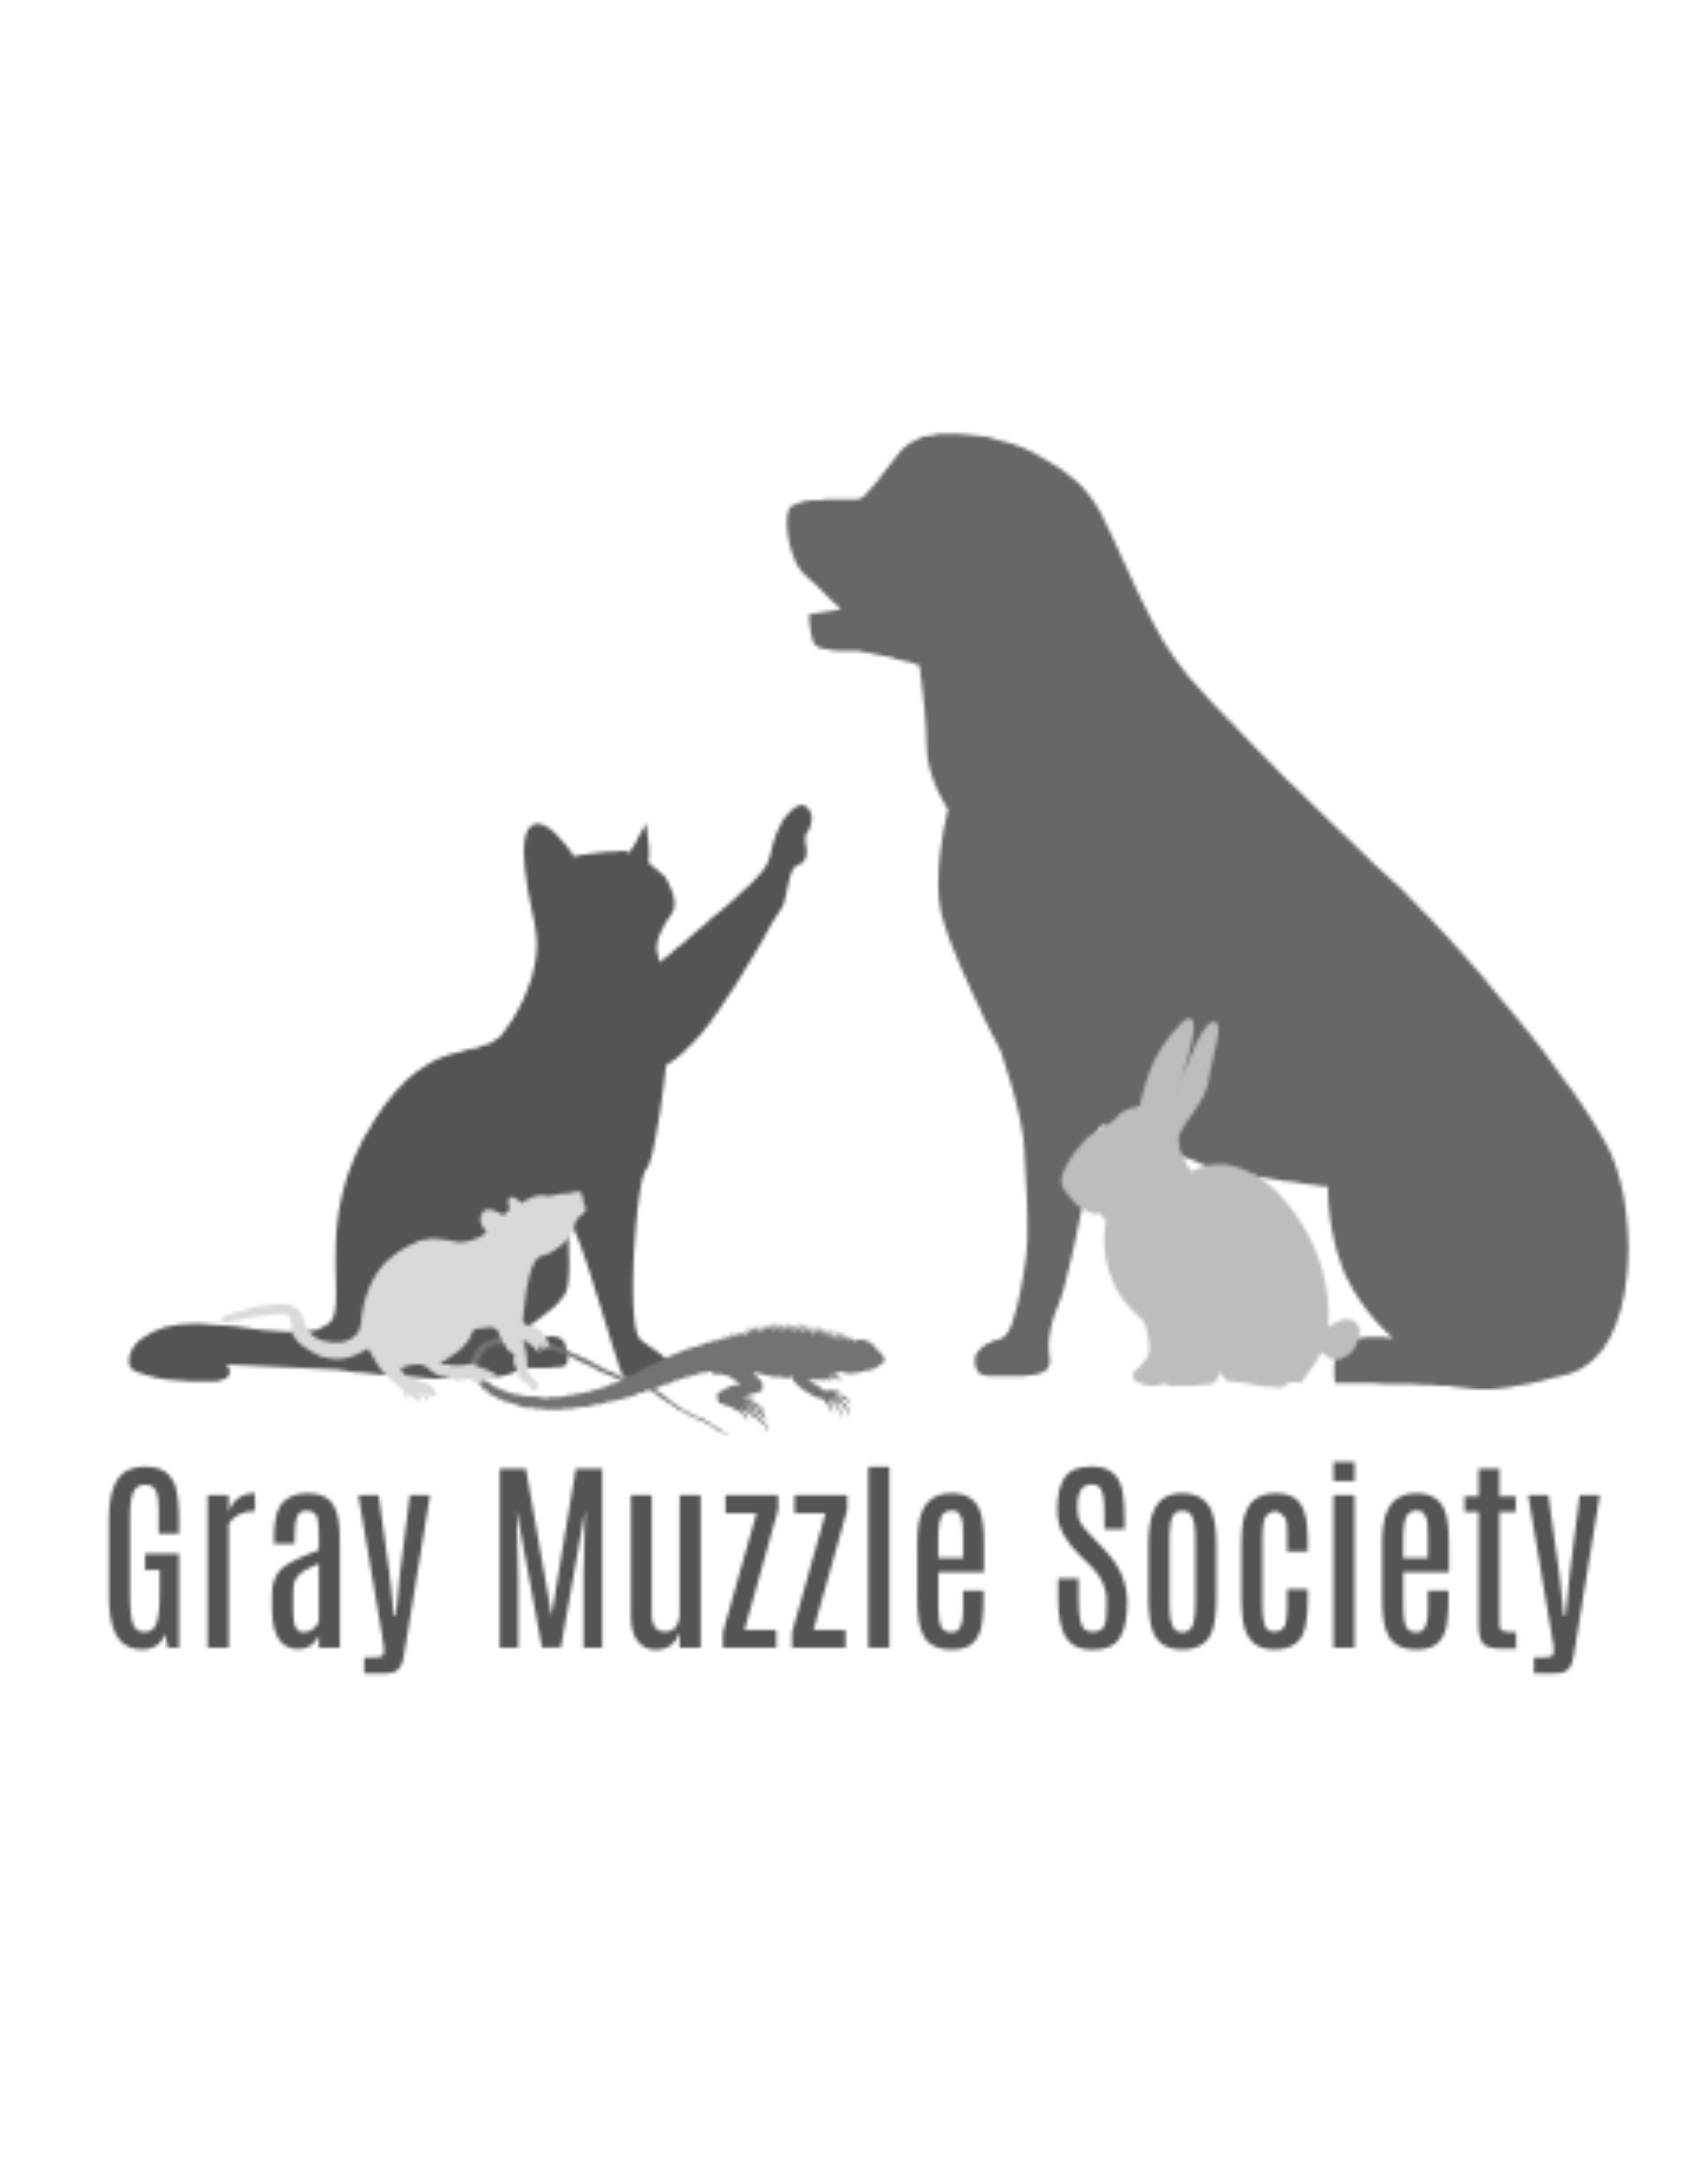 Gray Muzzle Society